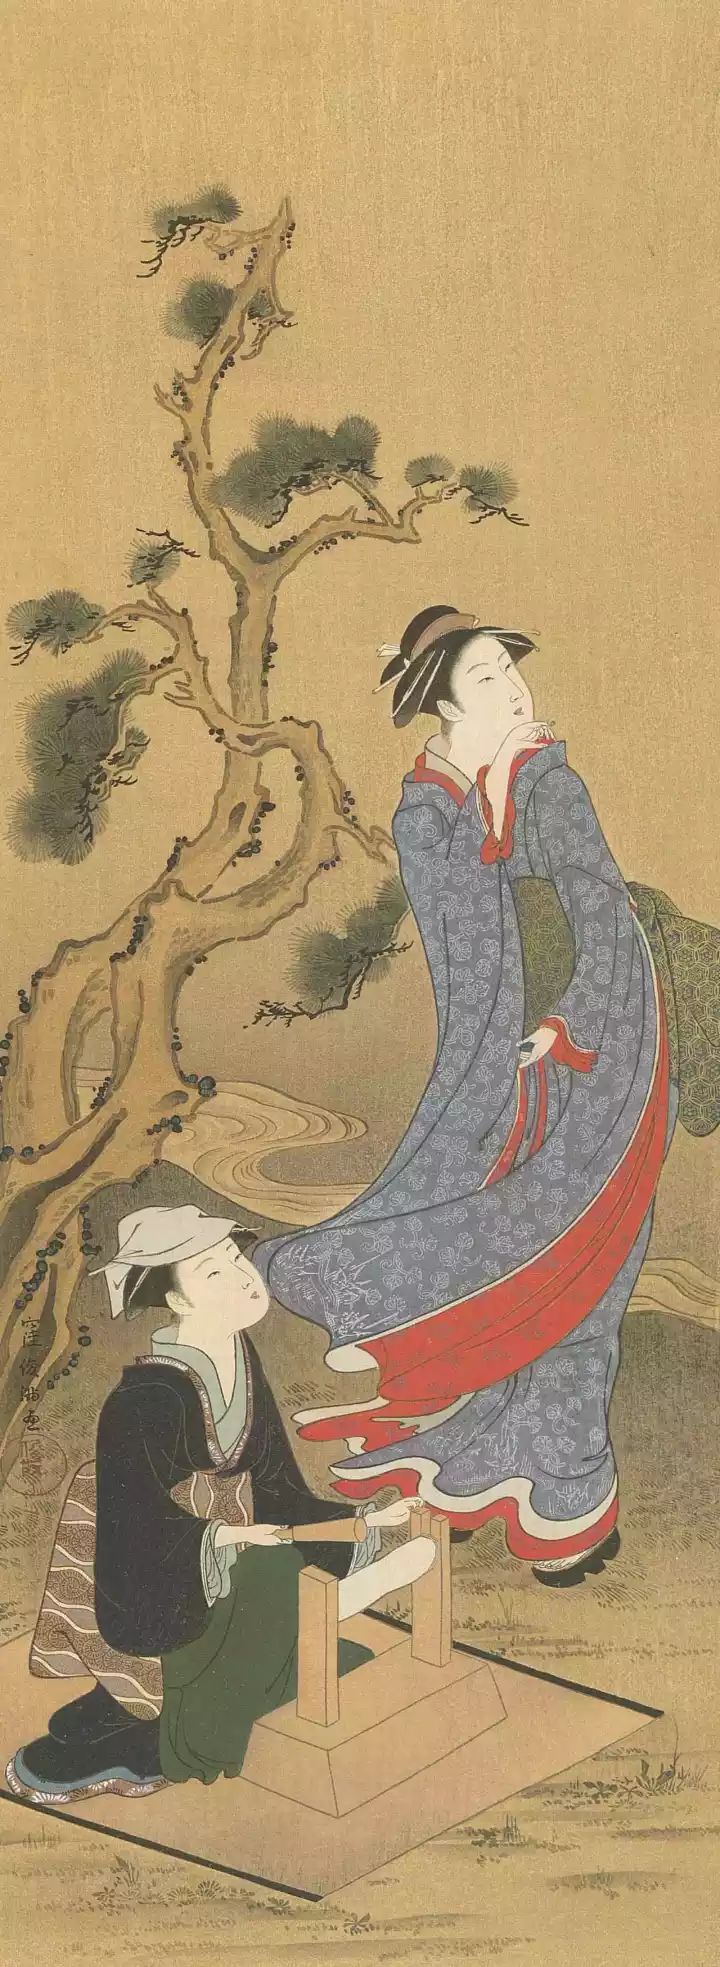 画技法和印刷技术的局限,极其鲜活生动地描绘和记录了江户时期日本的